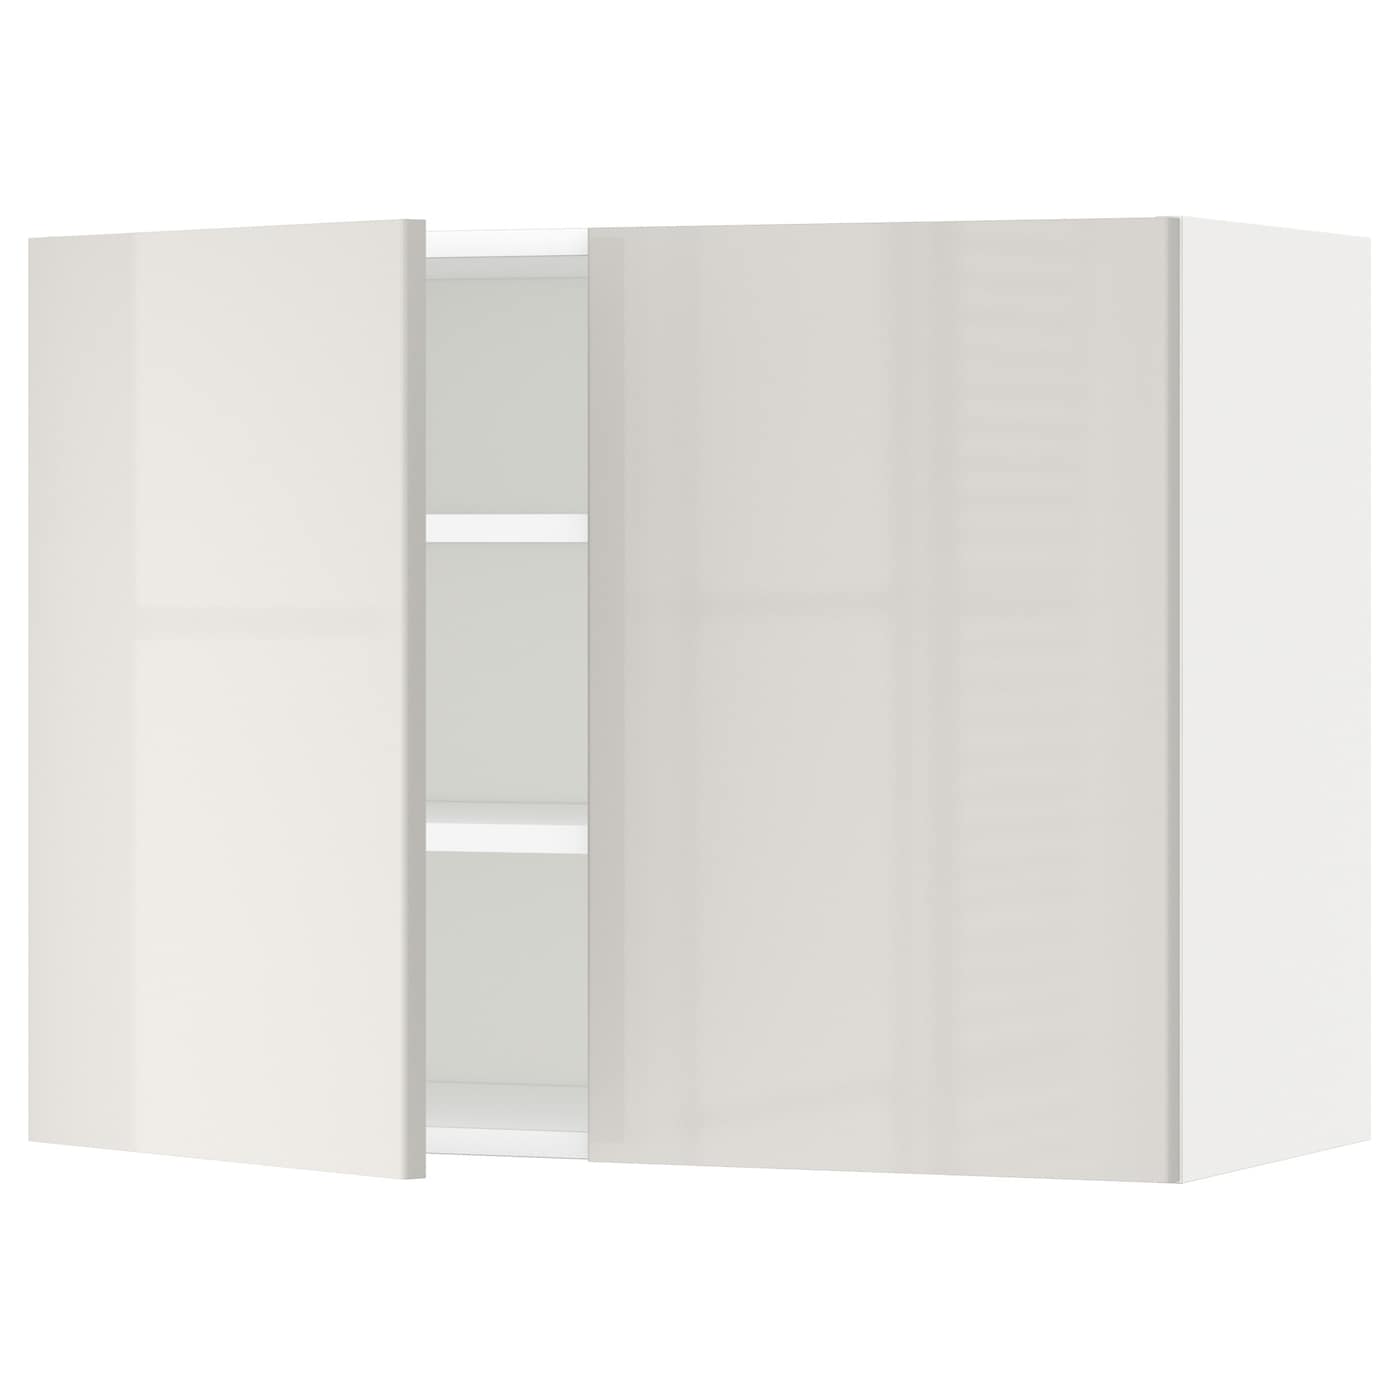 Навесной шкаф с полкой - METOD IKEA/ МЕТОД ИКЕА, 80х60 см, белый